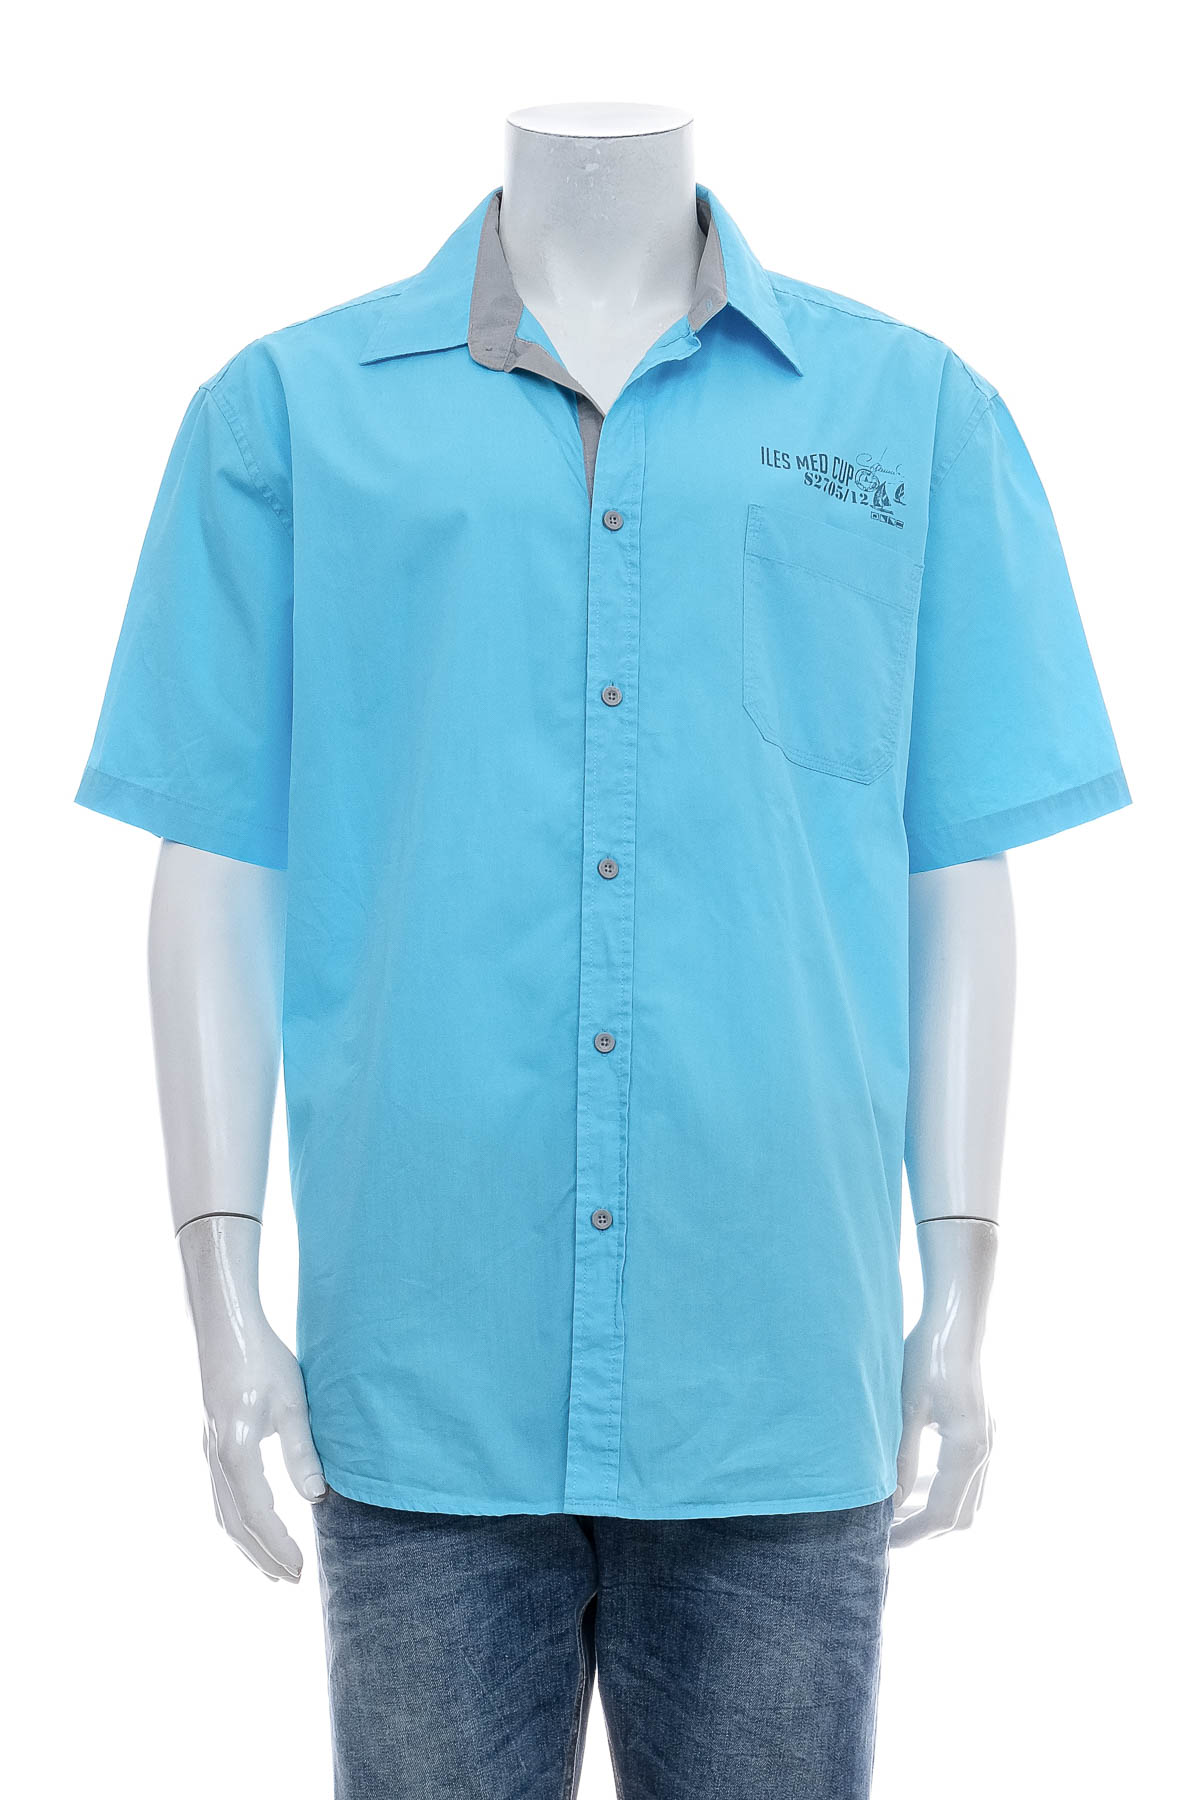 Ανδρικό πουκάμισο - ATLAS for MEN - 0